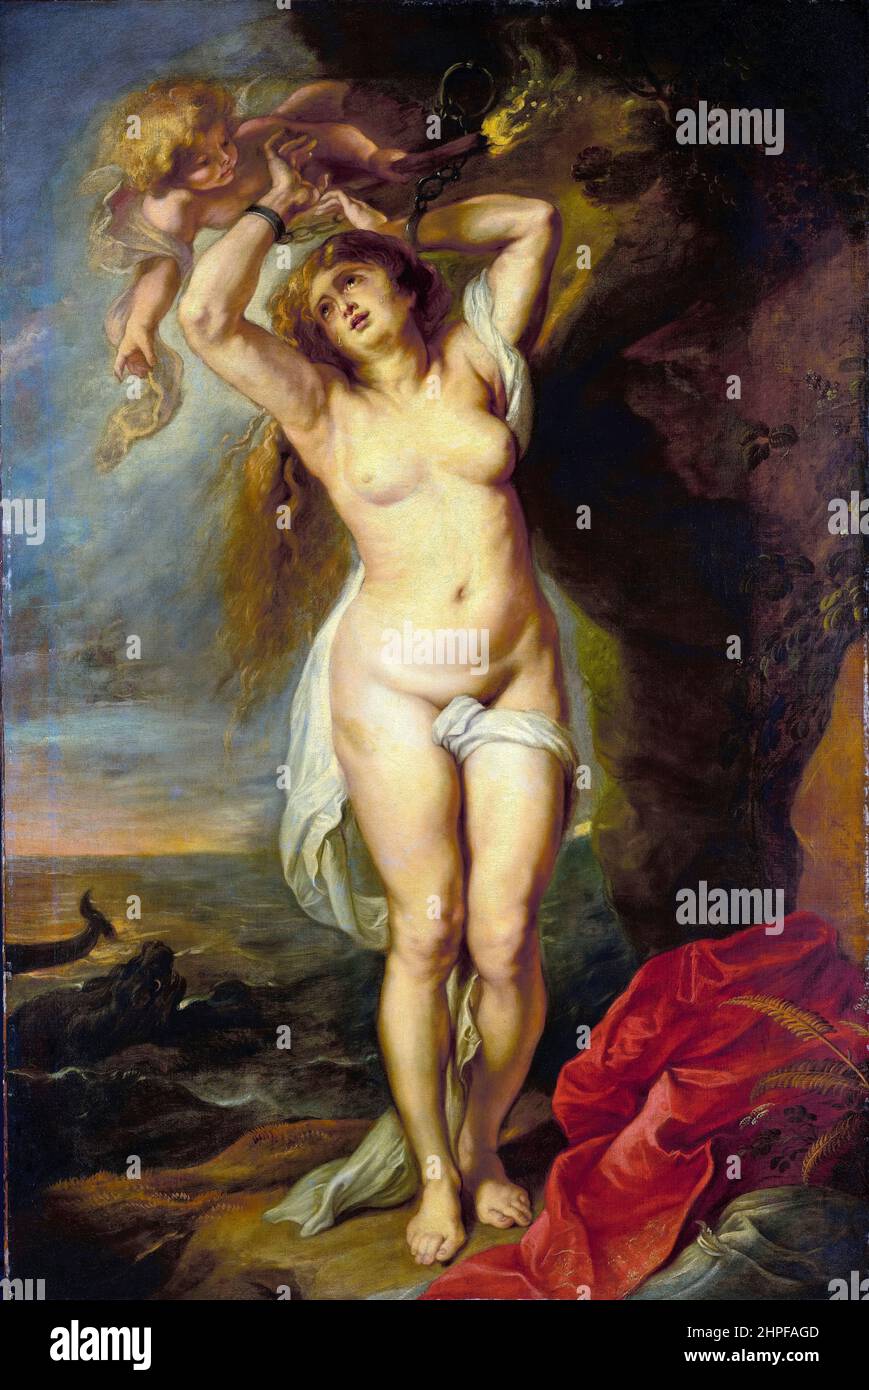 Andromeda, peinture à l'huile sur toile de Peter Paul Rubens, vers 1638 Banque D'Images